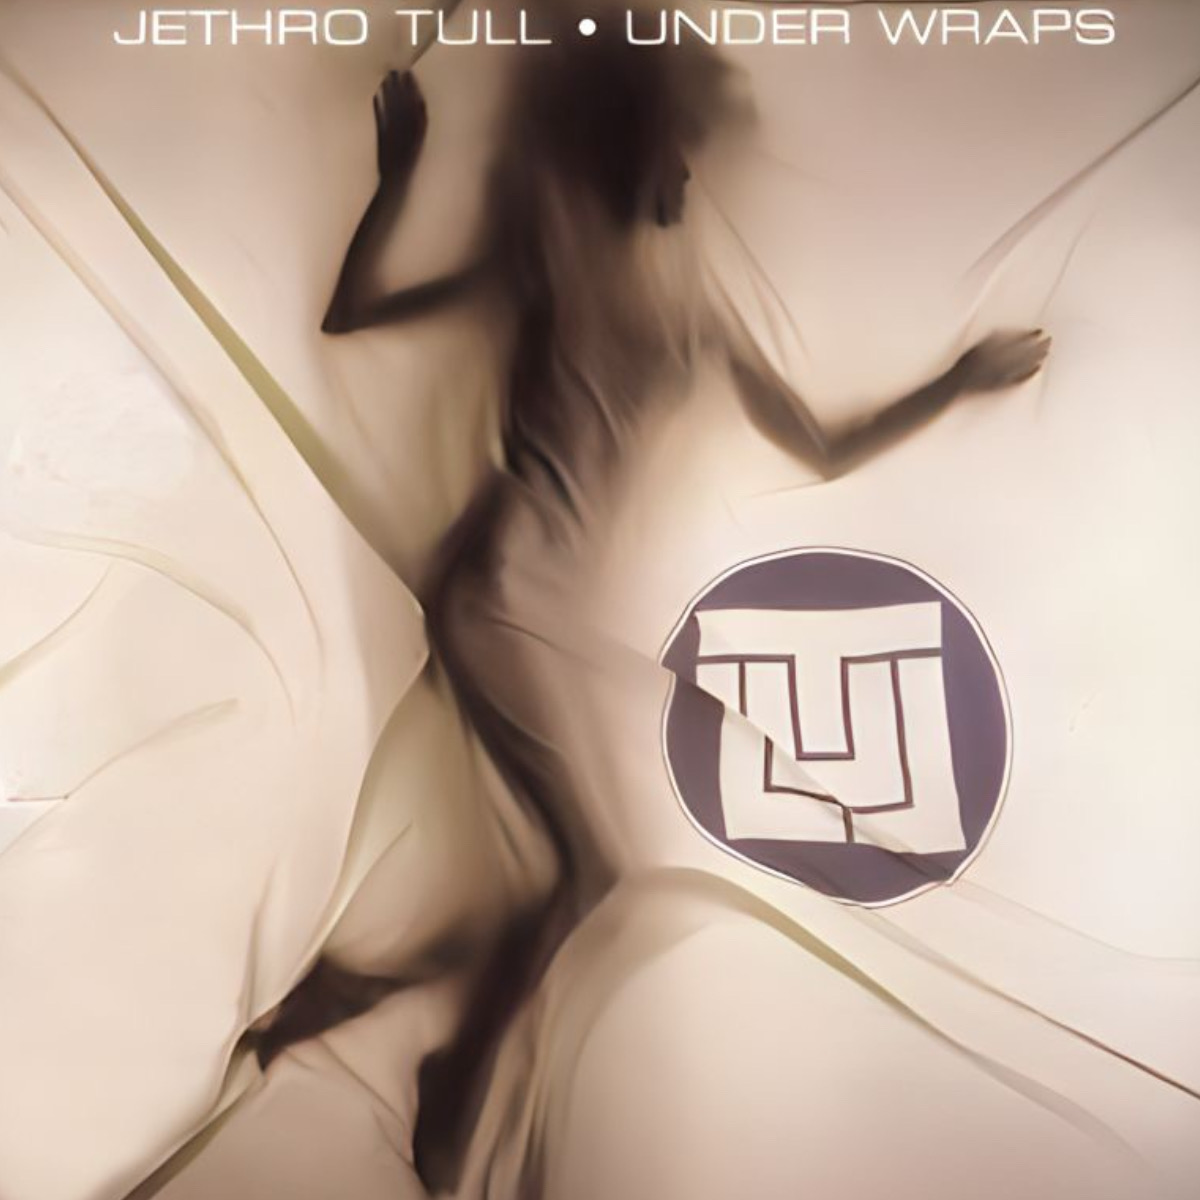 Jethro Tull "Under Wraps" Album Cover